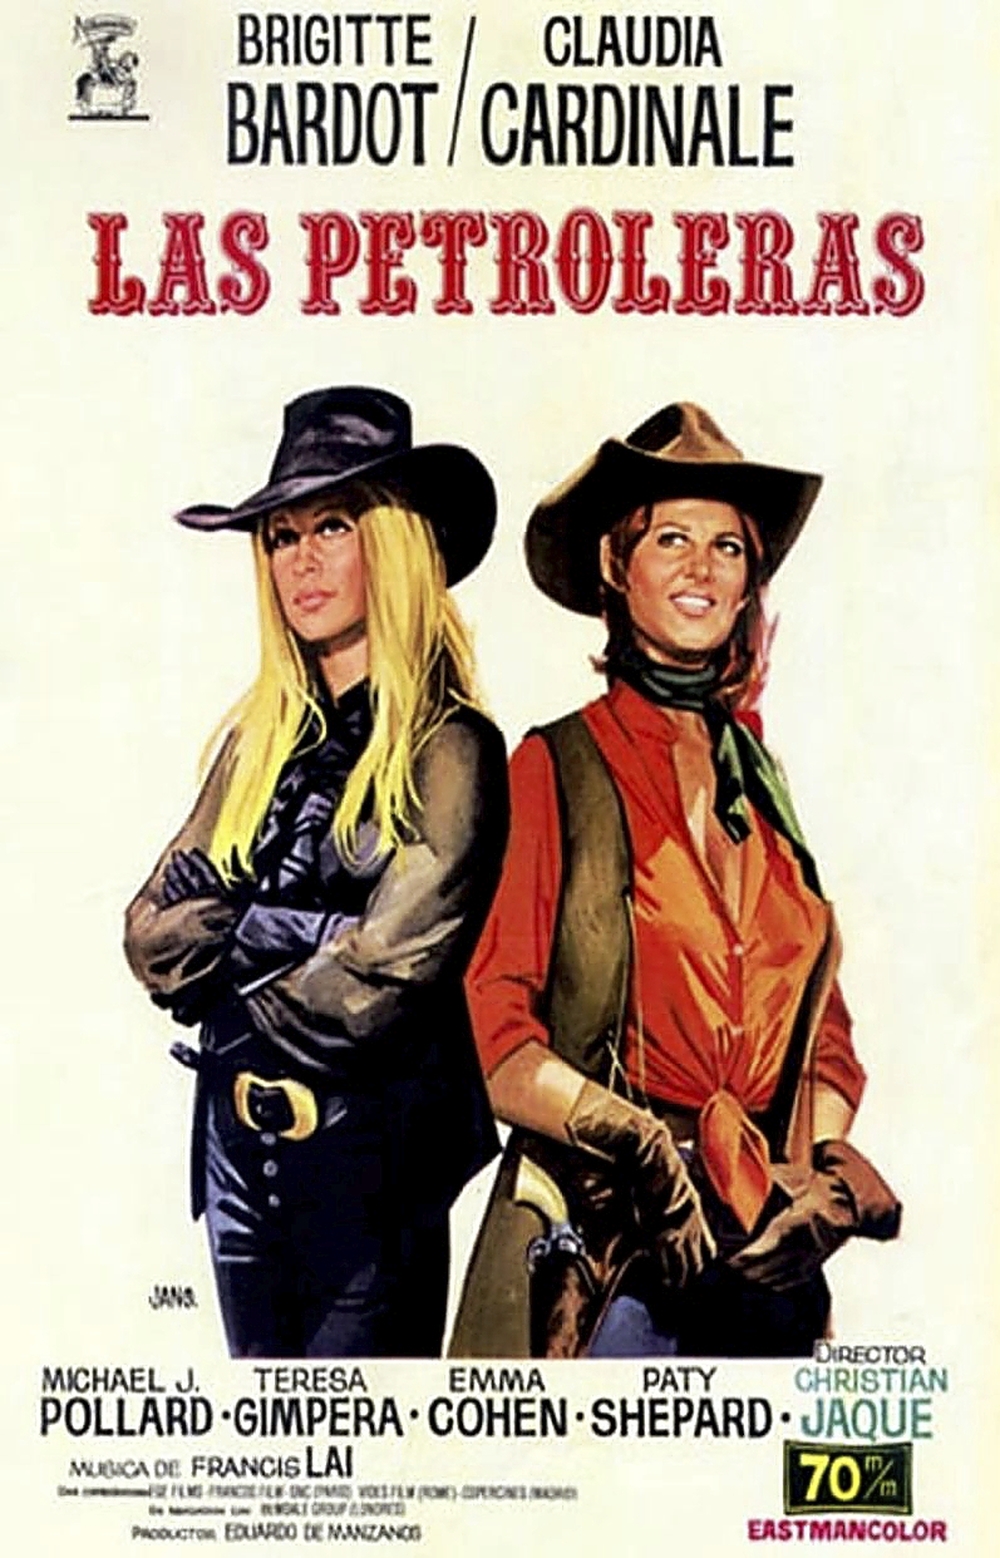 Cartel de la película 'Las petroleras', con Brigitte Bardot y Claudia Cardinale como protagonistas.  / Diario de Burgos